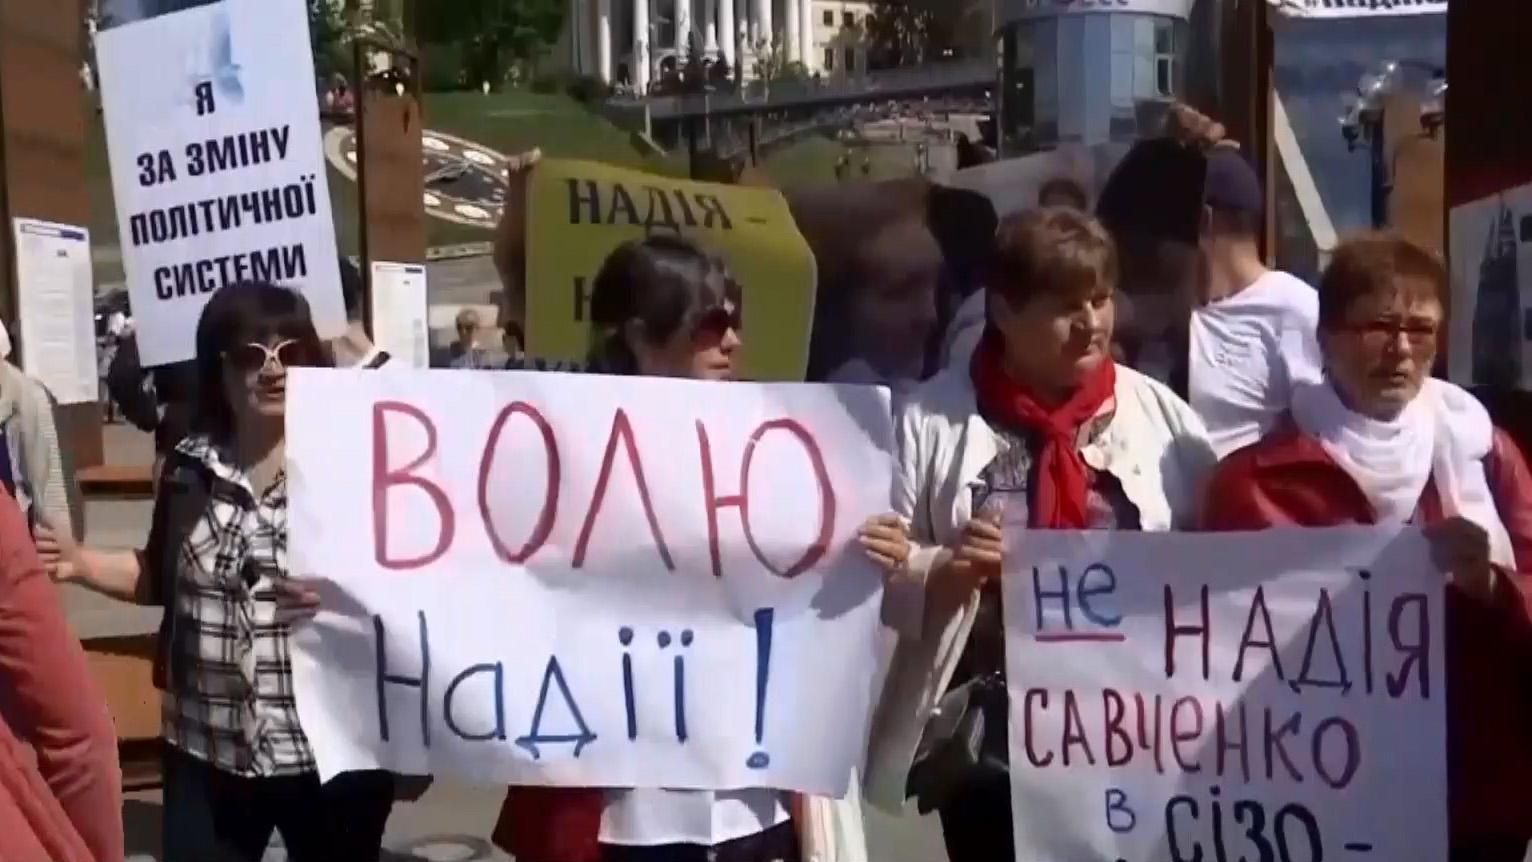 Політичне дежавю: на Майдані люди вимагали звільнити Надію Савченко